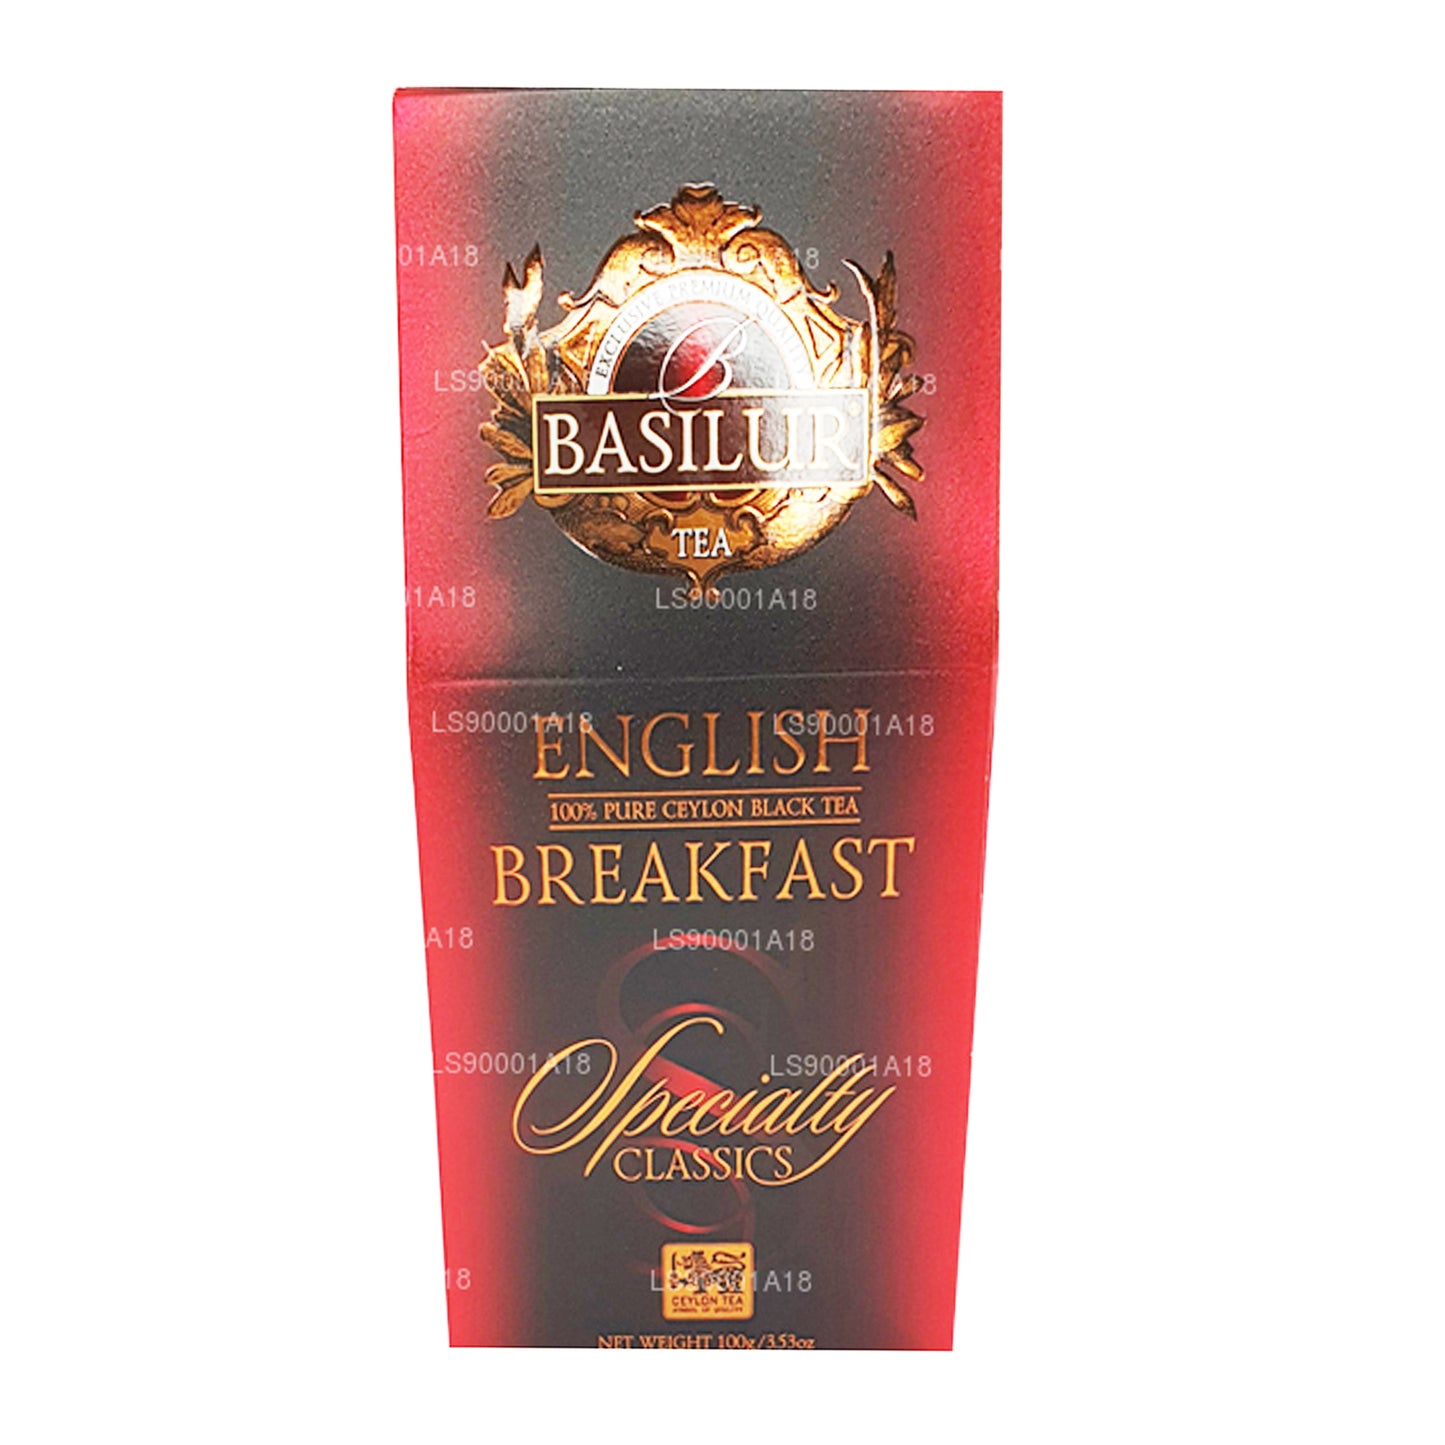 Английский завтрак Basilur Specialty Classics (100 г)